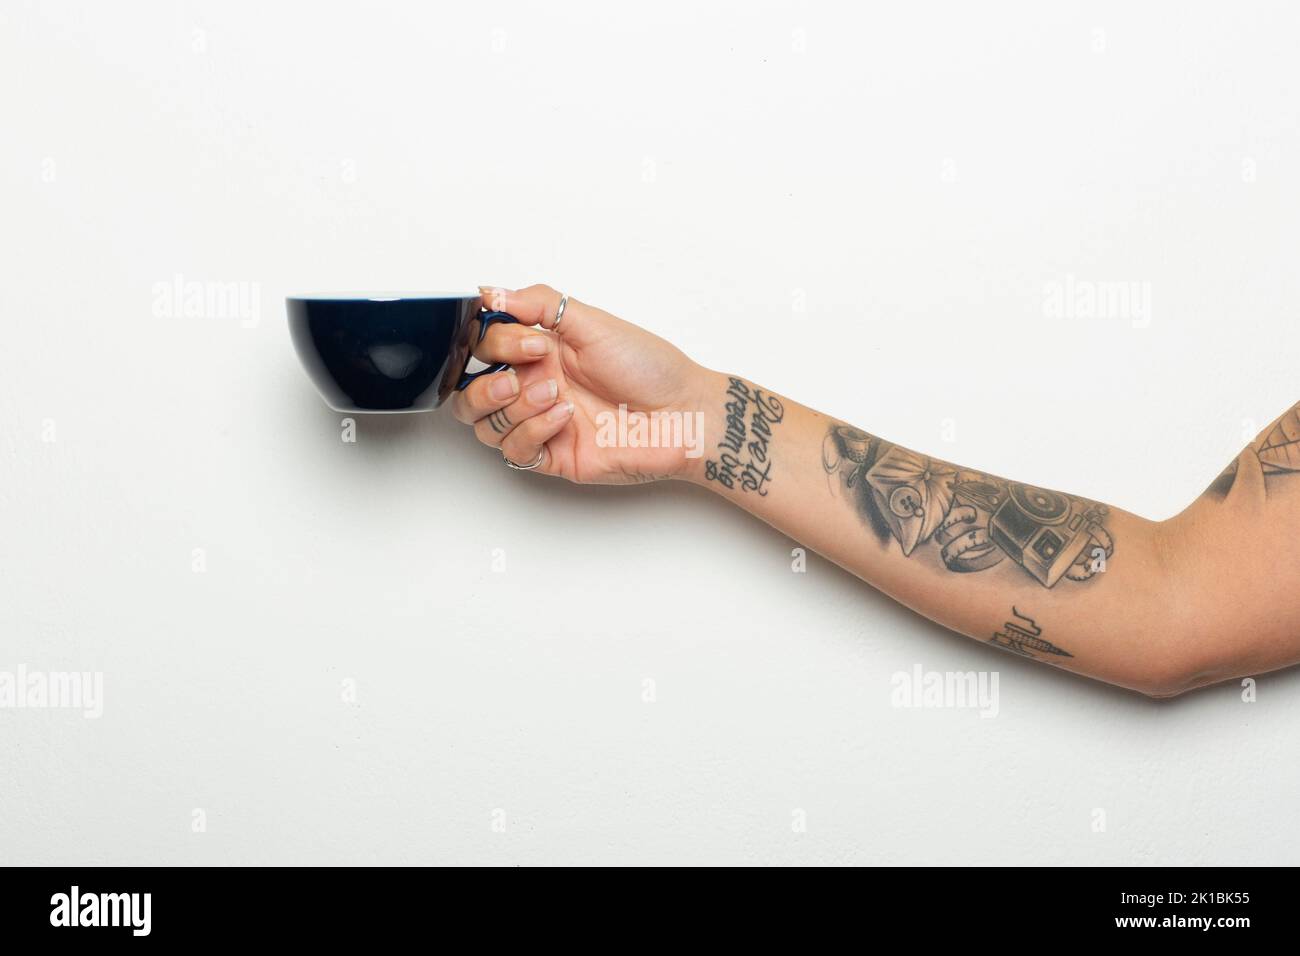 Gros plan d'une main et d'un bras de femme tatoués avec une tasse de café sur fond blanc Banque D'Images